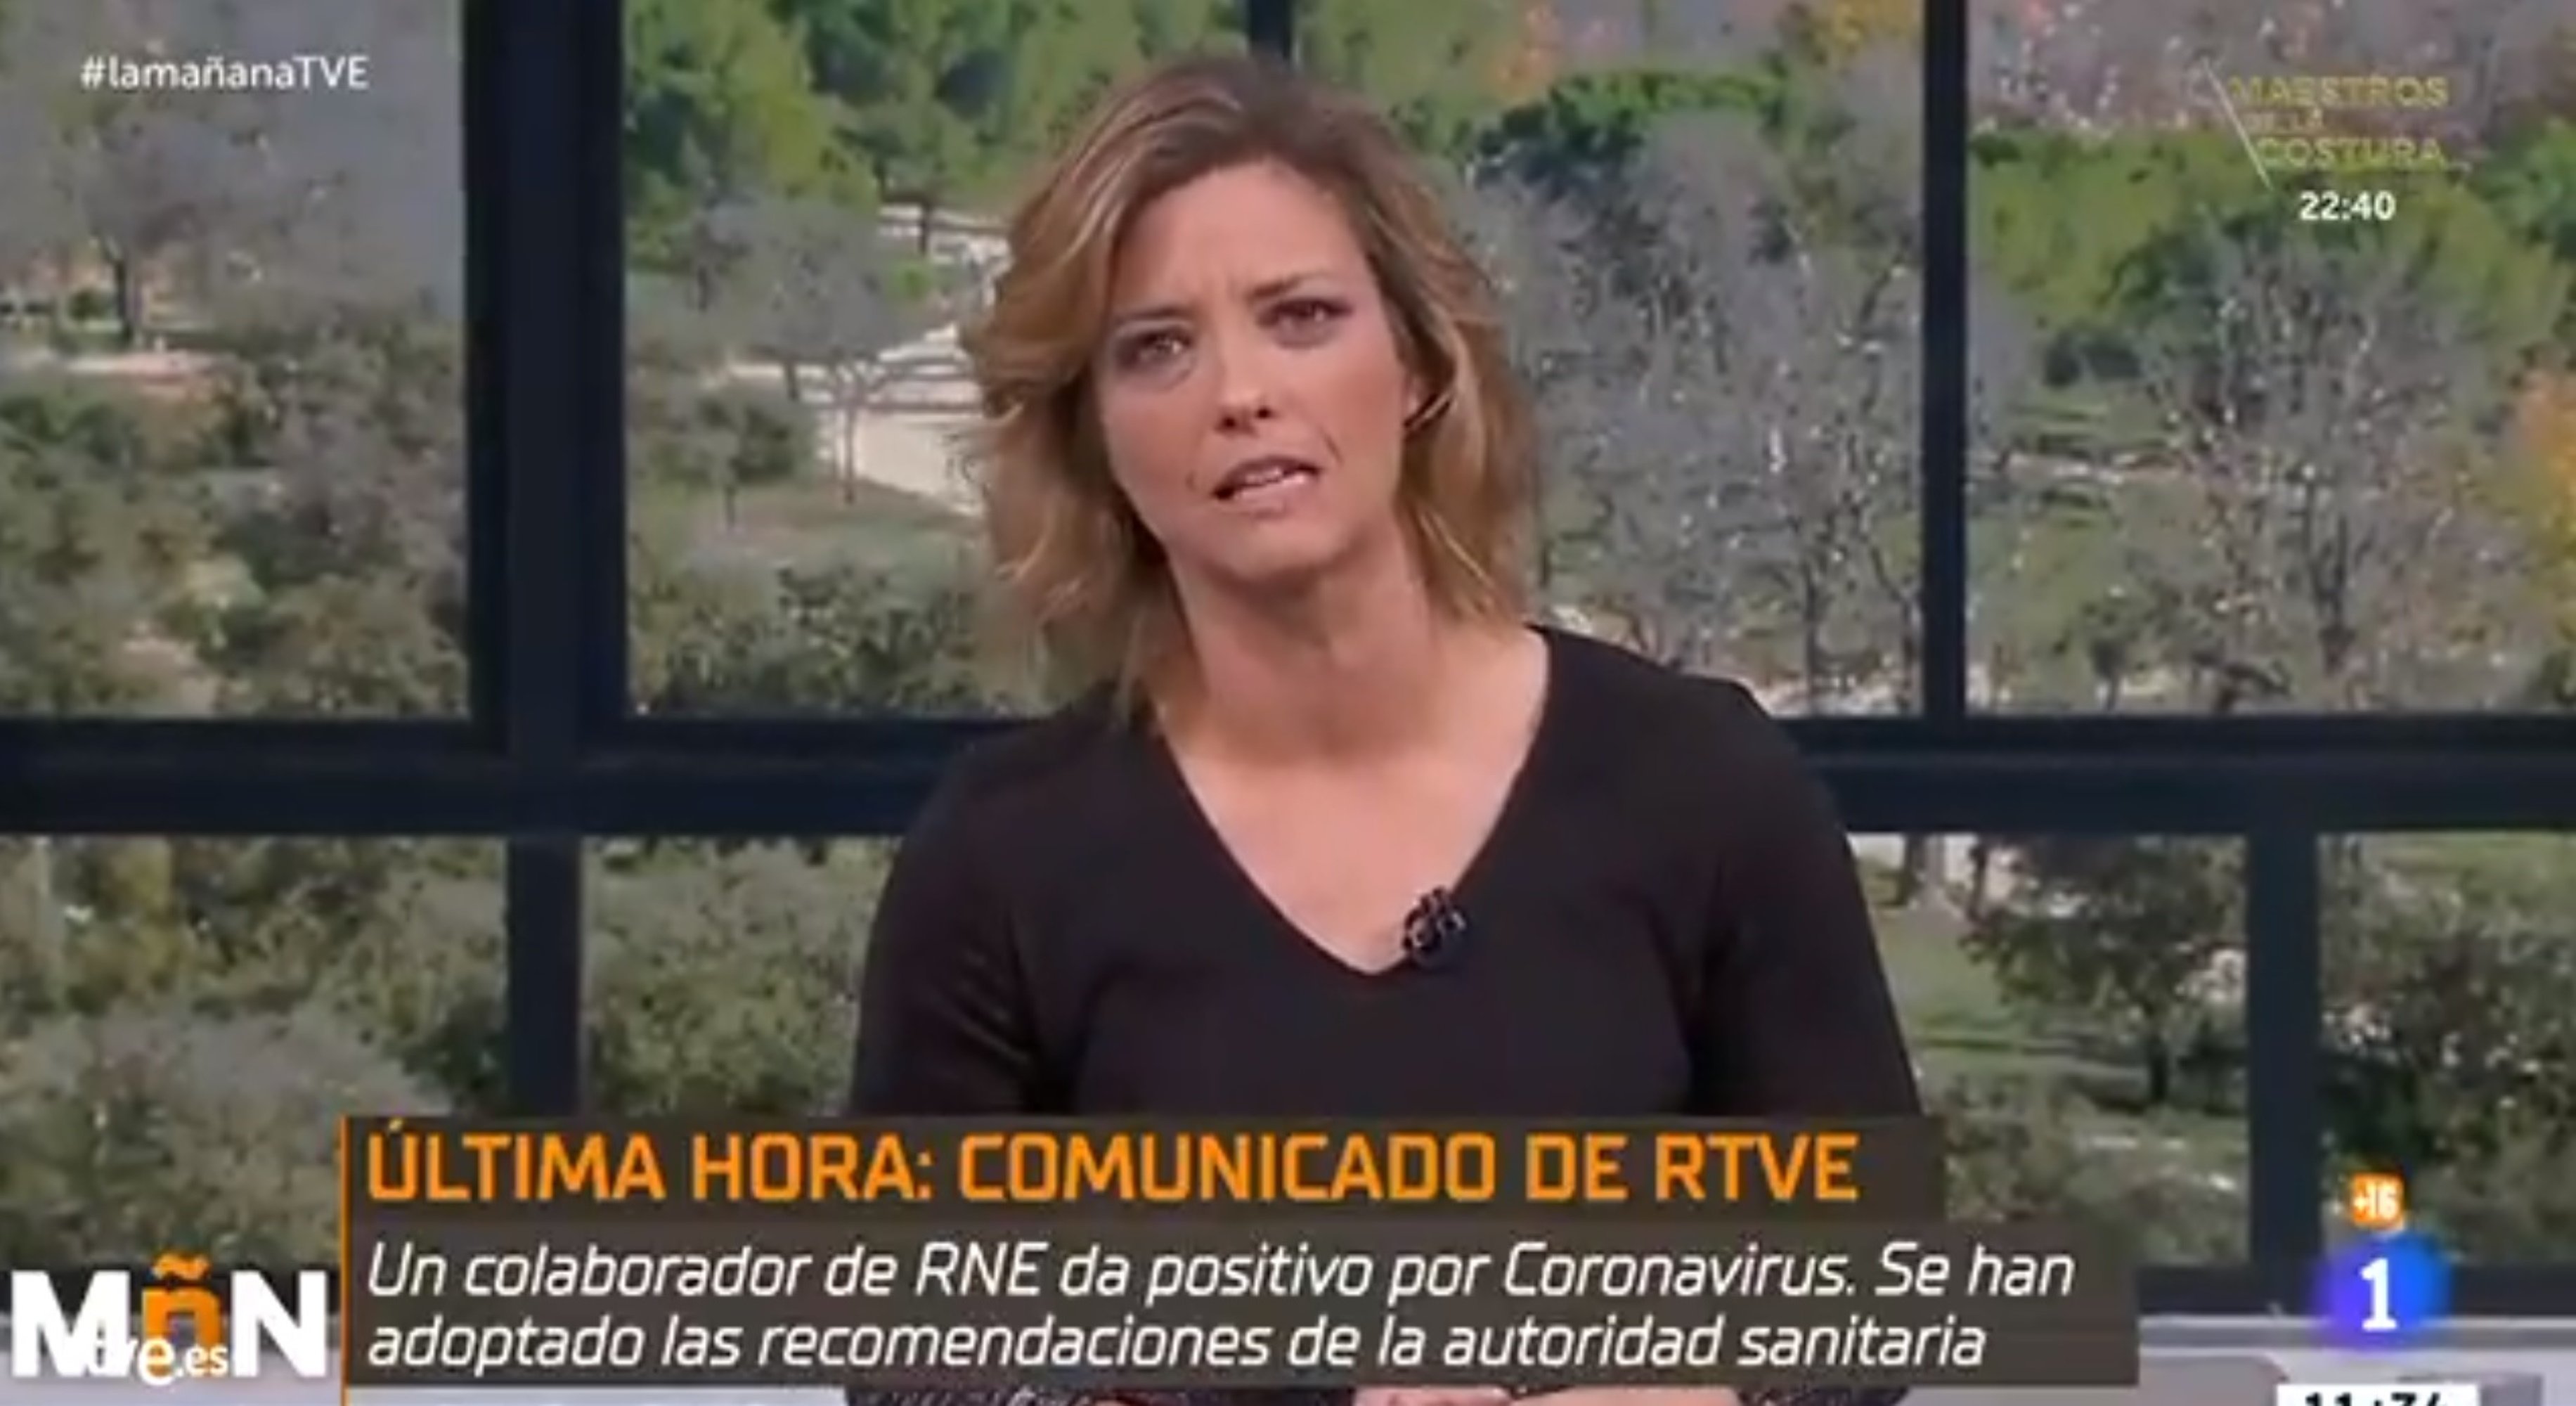 María Casado informa de un caso de coronavirus en RTVE: "Se están tomando medidas"